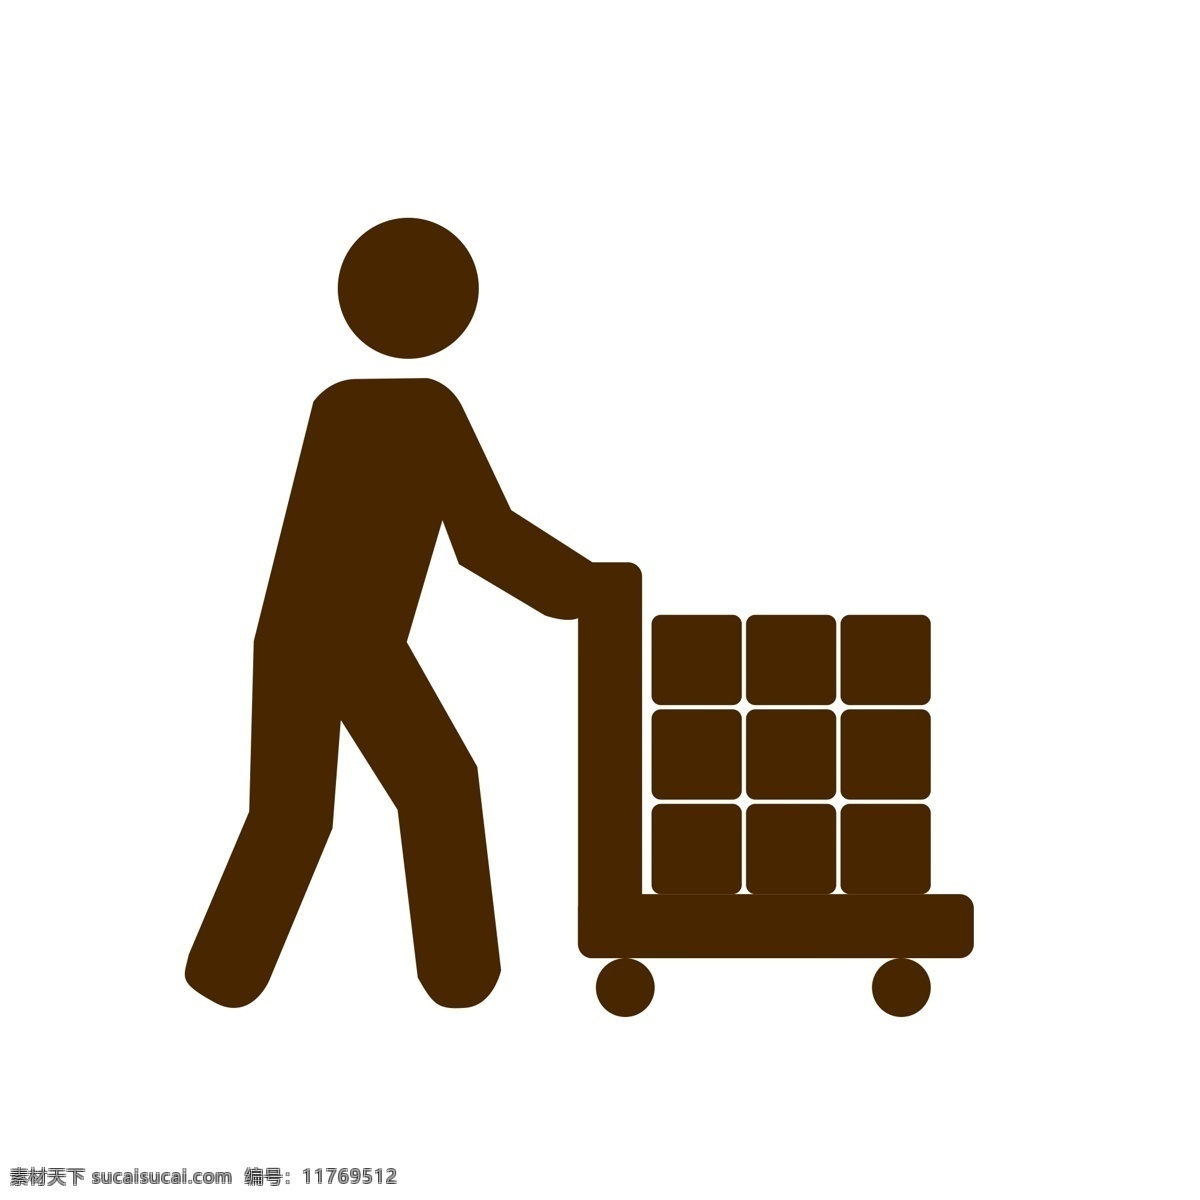 人退货车素材 箱货 图标 矢量图 正方形 人 人图标 推车 箱子